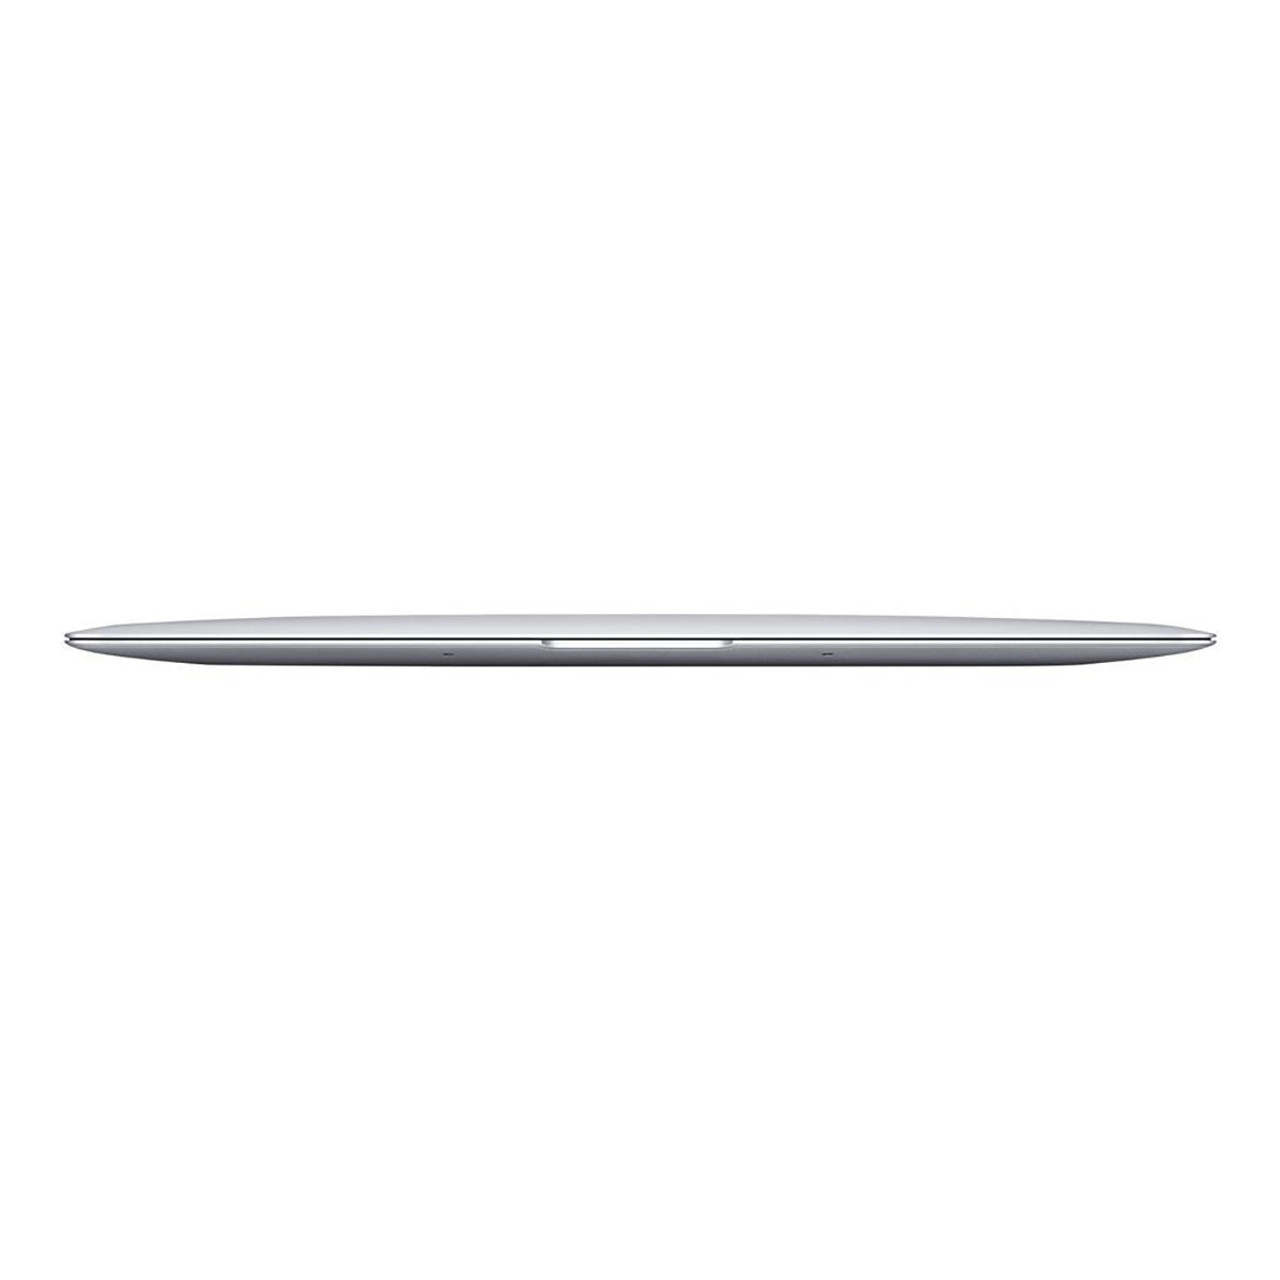 Apple® MacBook Air, 13-Inch, 1.80GHz i5, 8GB RAM, 128GB Storage, MQD42LL/A product image